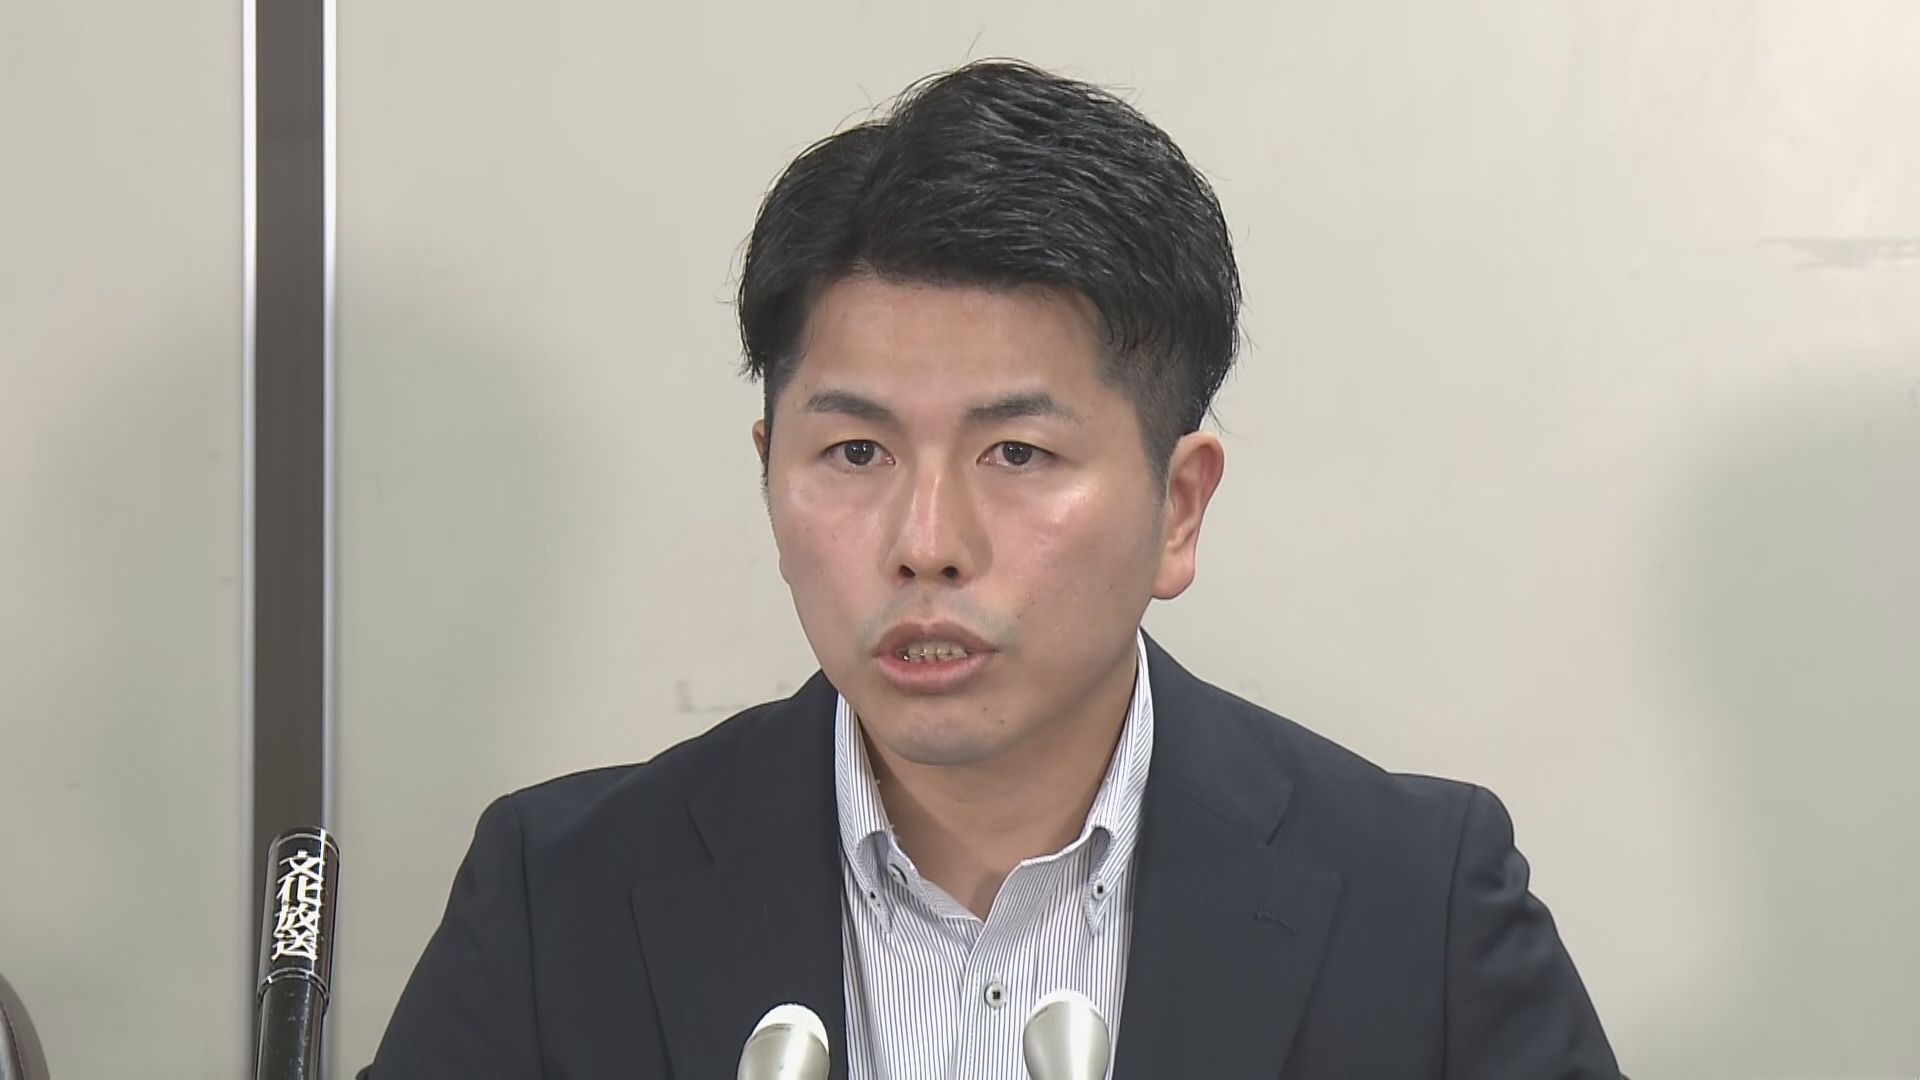 池袋暴走事故遺族・松永拓也さんに対する脅迫罪で男性（62）を略式起訴